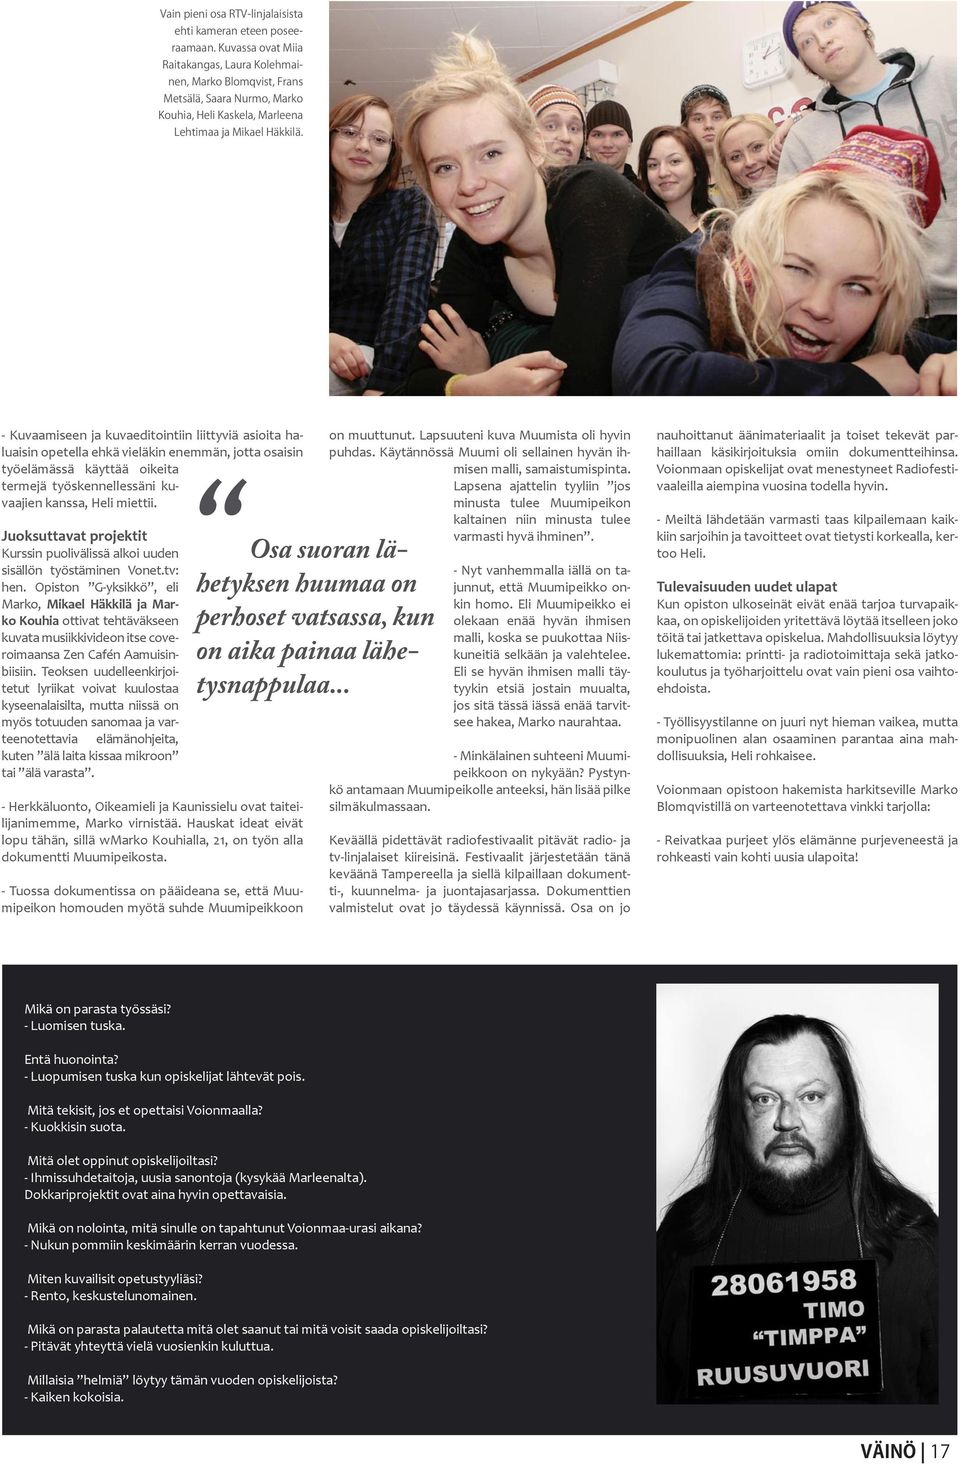 Opiston G-yksikkö, eli Marko, Mikael Häkkilä ja Marko Kouhia ottivat tehtäväkseen kuvata musiikkivideon itse coveroimaansa Zen Cafén Aamuisinbiisiin.